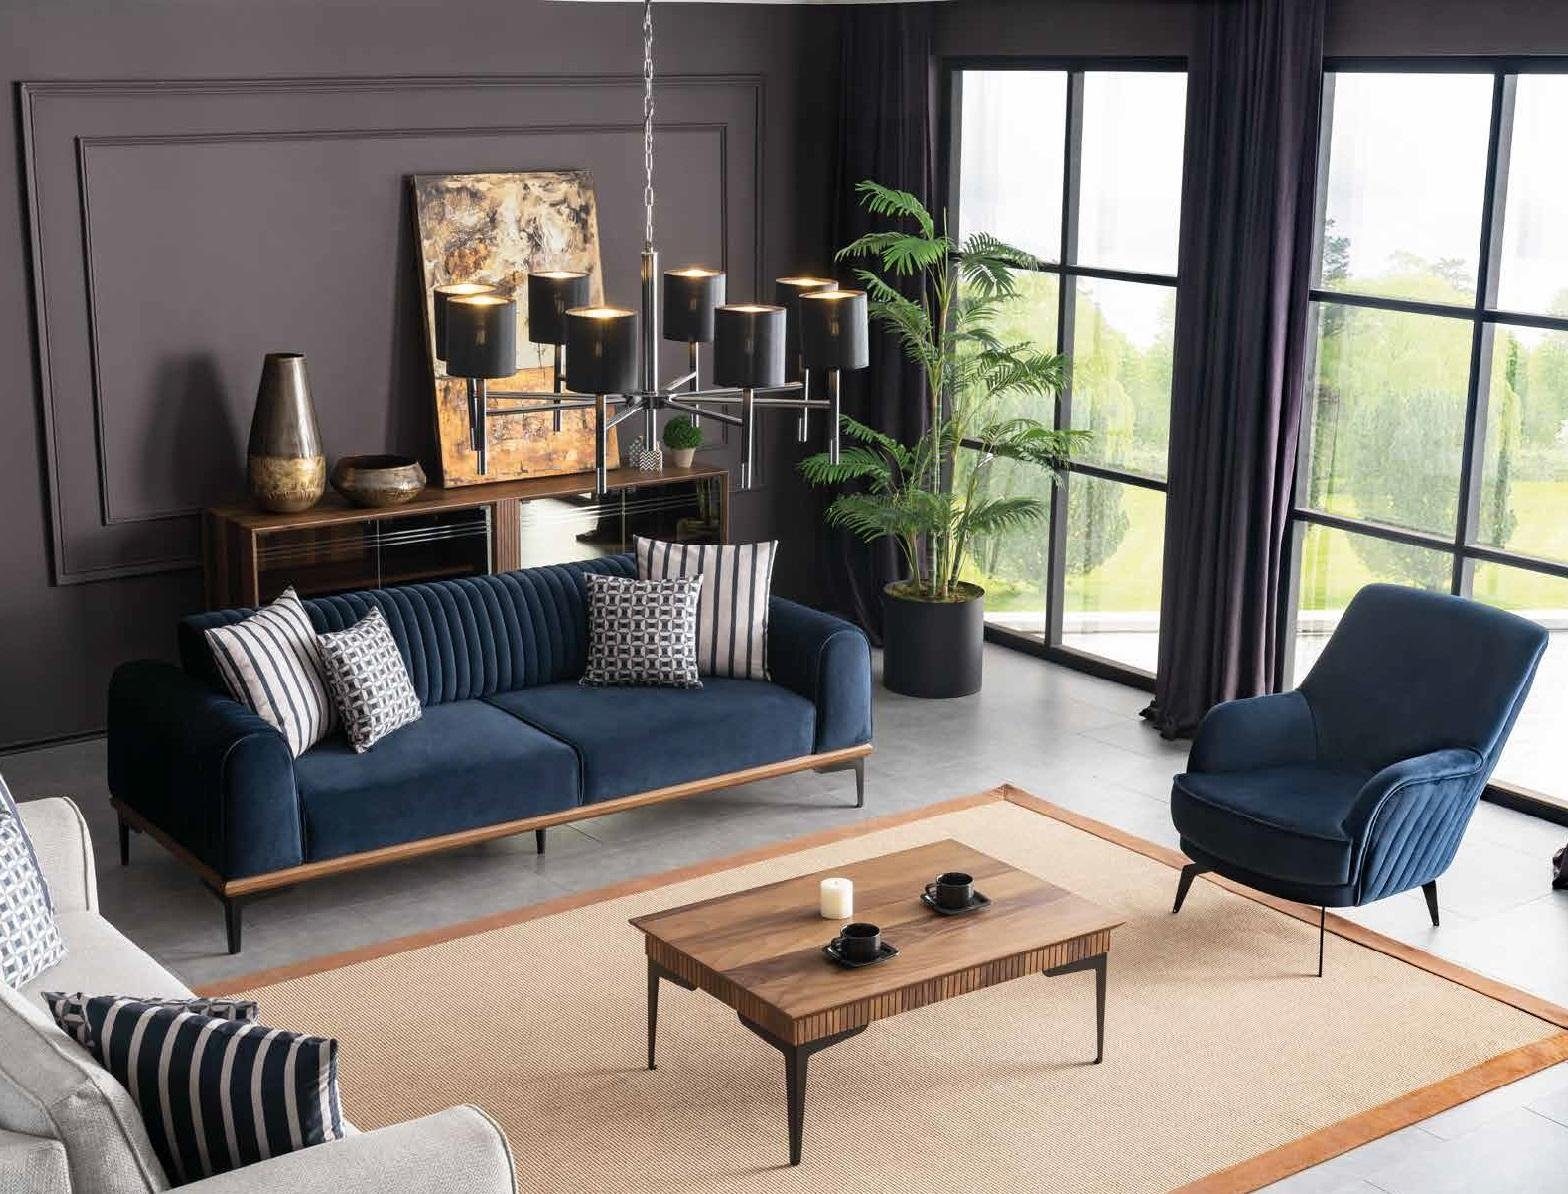 Couch Blauer Sofa Europe JVmoebel in Wohnzimmer Sitzmöbel Couch, Dreisitzer Moderner Made